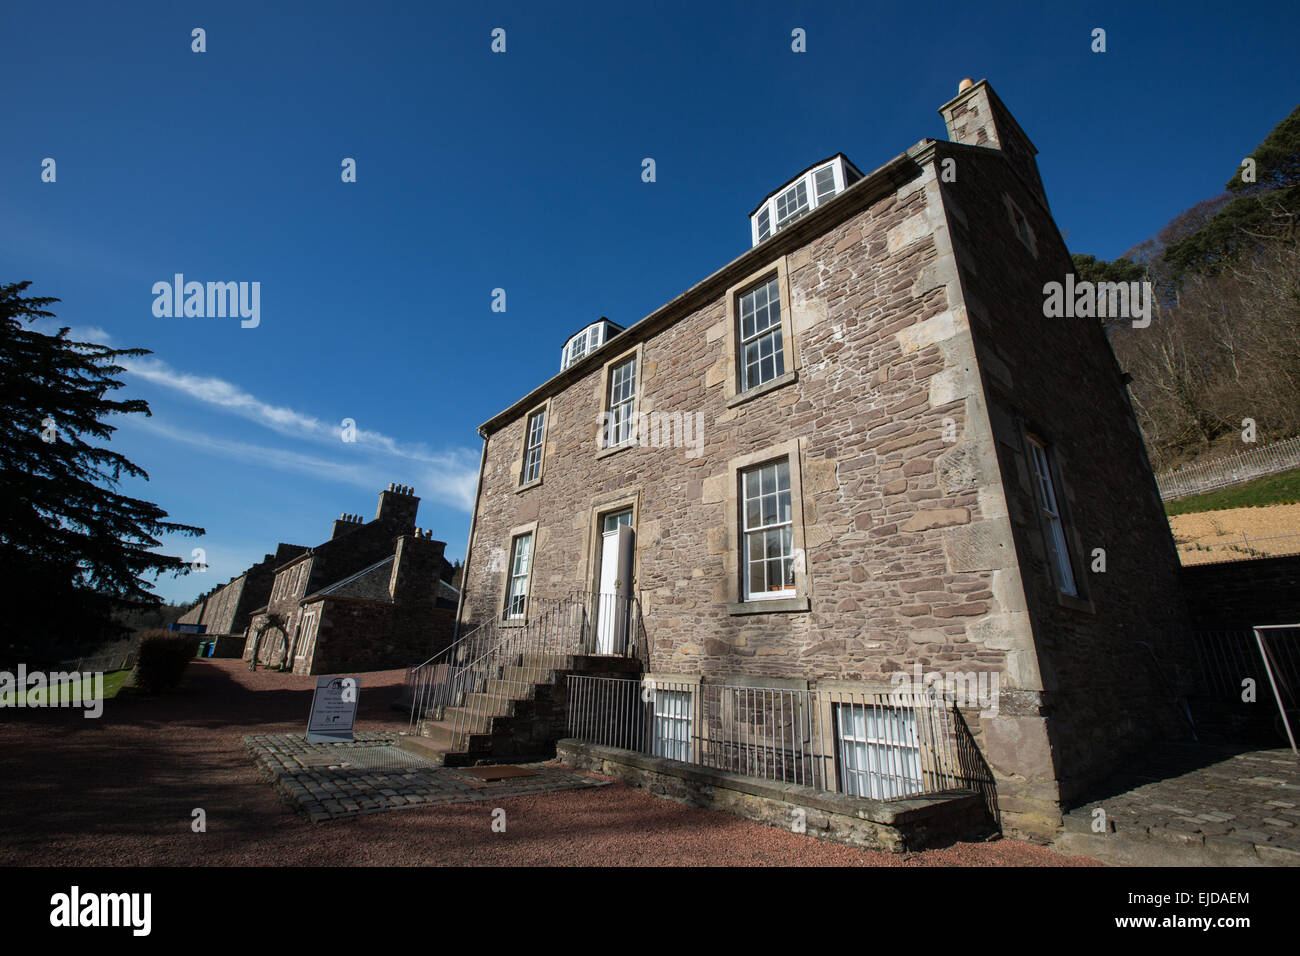 Robert Owen's mill, adesso sito del Patrimonio Mondiale dell'UNESCO, in New Lanark, Scotland, Regno Unito. Foto Stock